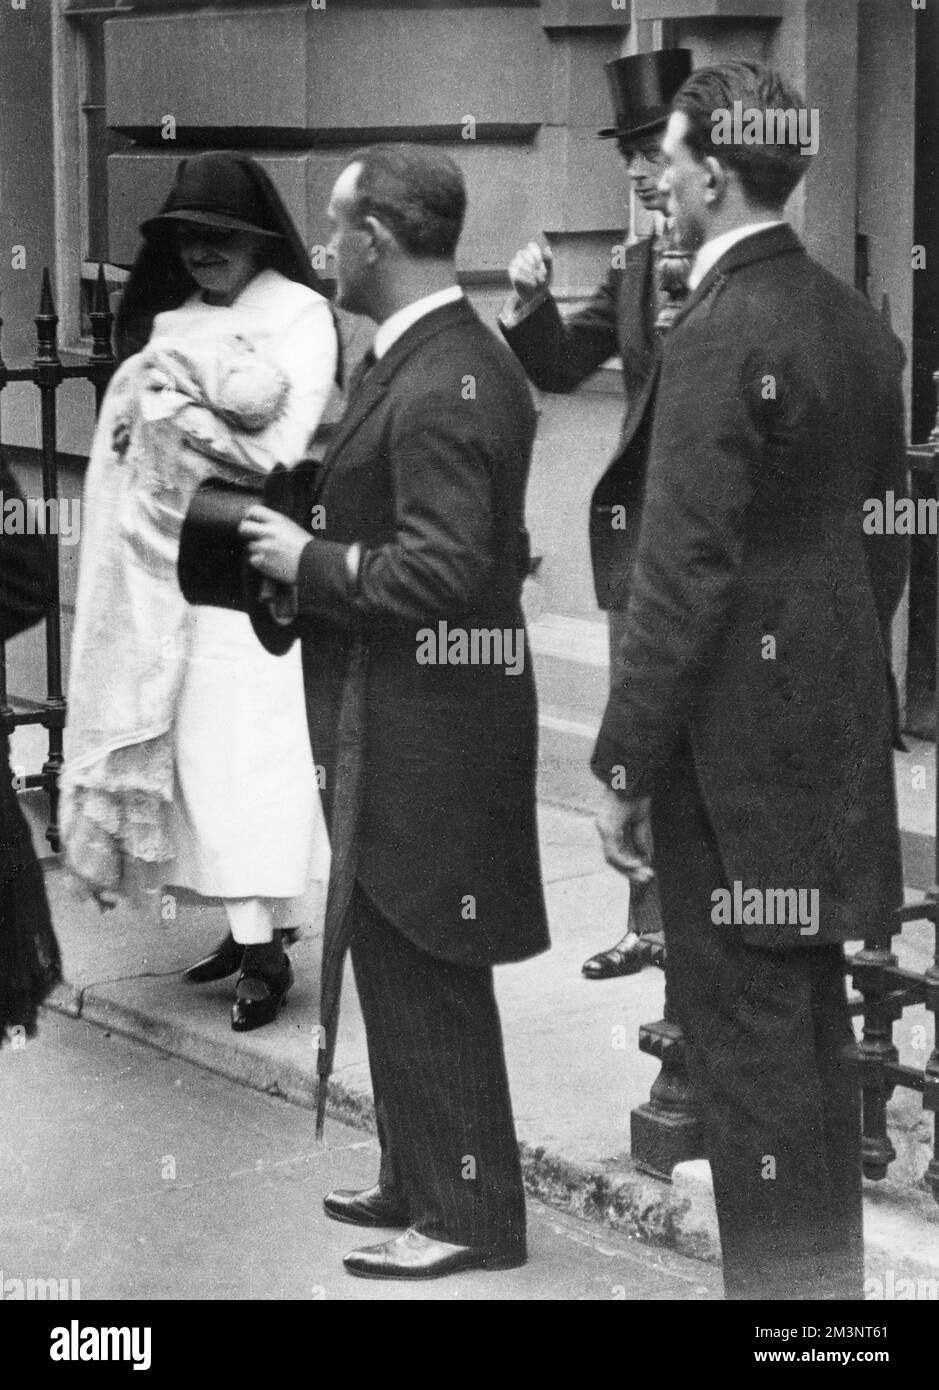 Prinzessin Elizabeth von York (Königin Elizabeth II.) wird zu einer wartenden Kutsche für ihre Taufe getragen, die am 29.. Mai 1926 in der Private Chapel im Buckingham Palace stattfand. Datum: 1926 Stockfoto